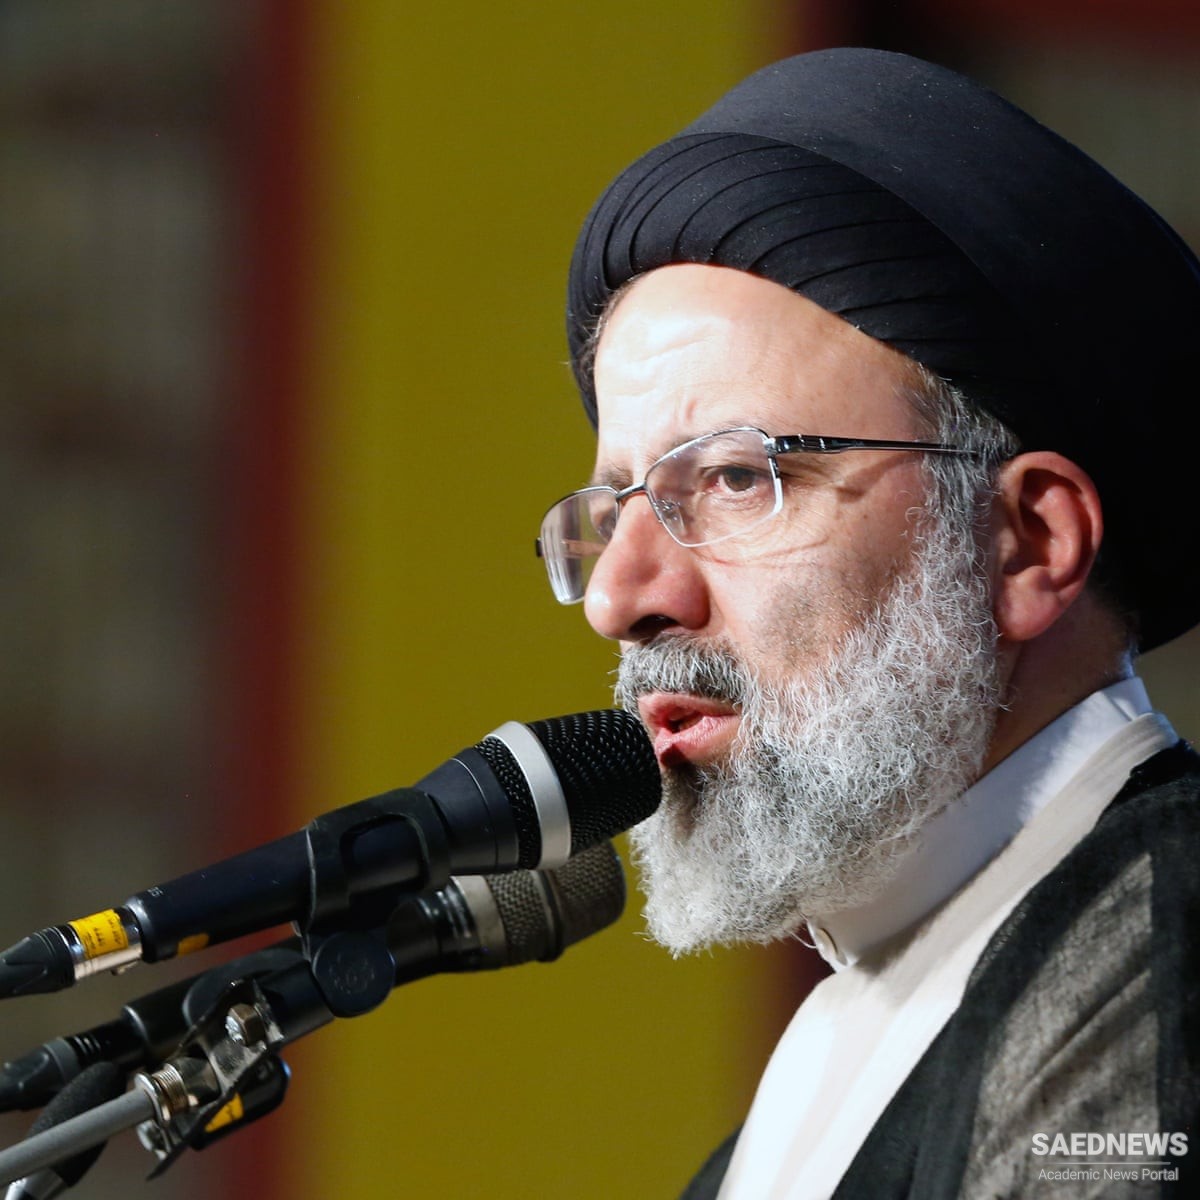 ईरान के न्यायपालिका प्रमुख अयातुल्ला राईसी ने मानवाधिकारों के अमेरिकी दोहरे मानदंडों को खारिज कर दिया